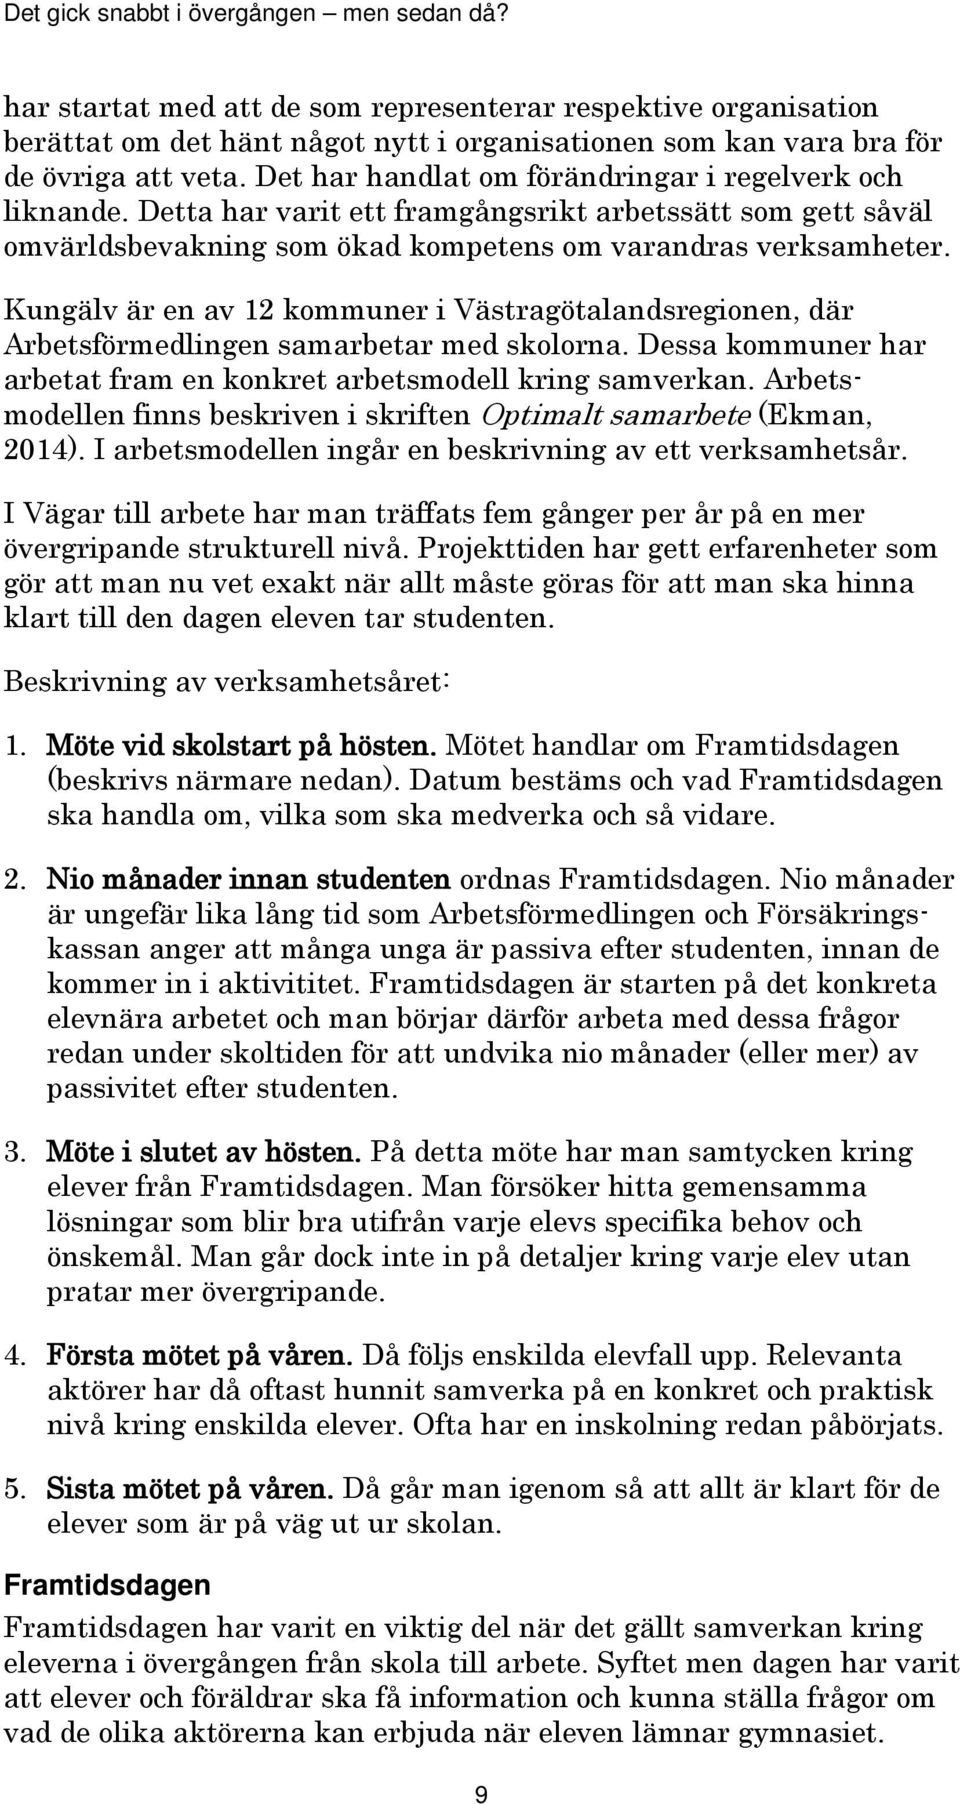 Kungälv är en av 12 kommuner i Västragötalandsregionen, där Arbetsförmedlingen samarbetar med skolorna. Dessa kommuner har arbetat fram en konkret arbetsmodell kring samverkan.